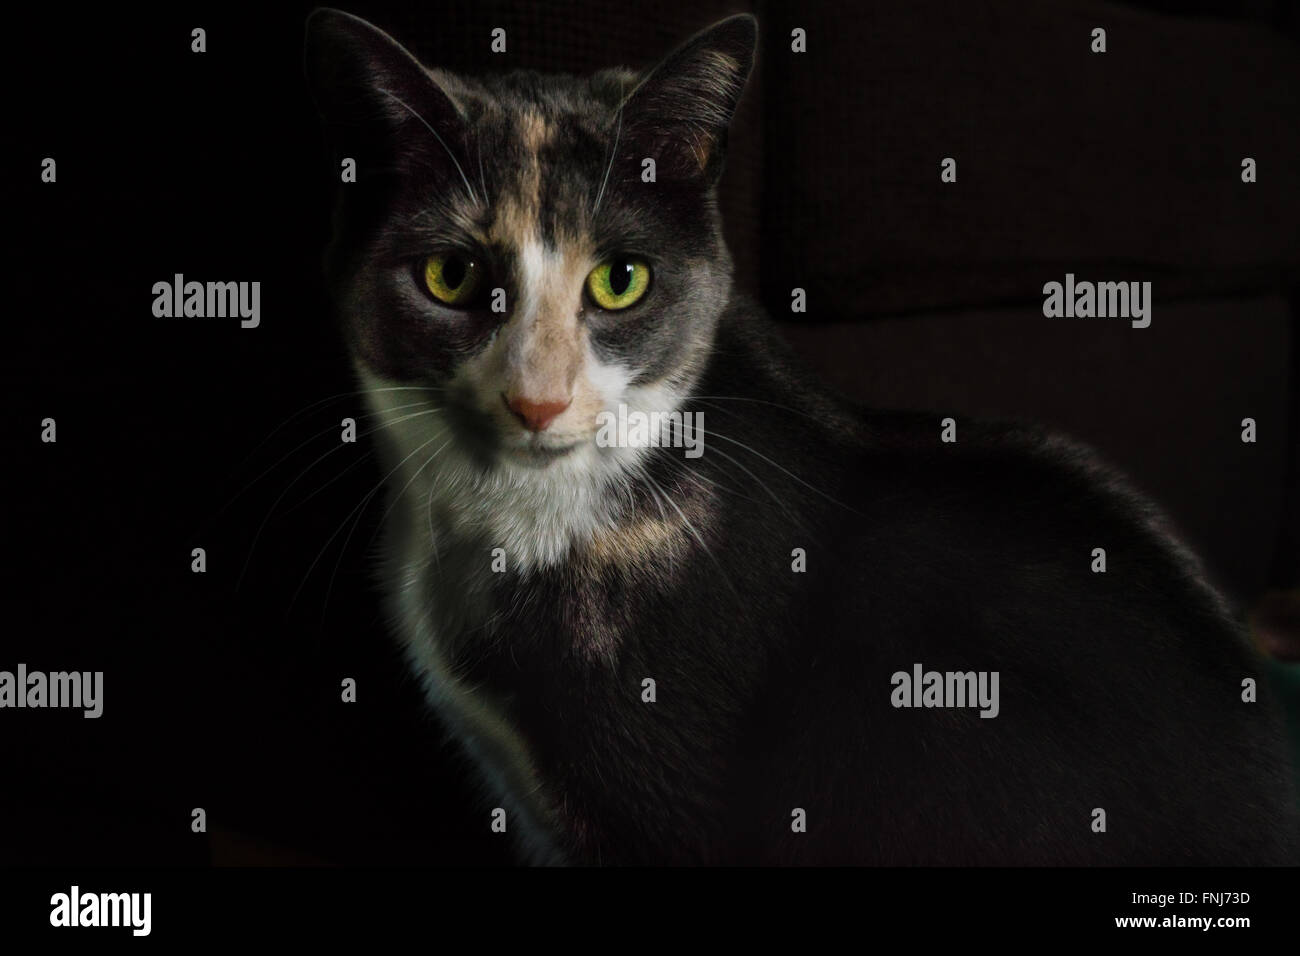 Pretty cat staring dritto con occhi dorati che lo rende un purrfect pet ritratto con sfondo nero Foto Stock